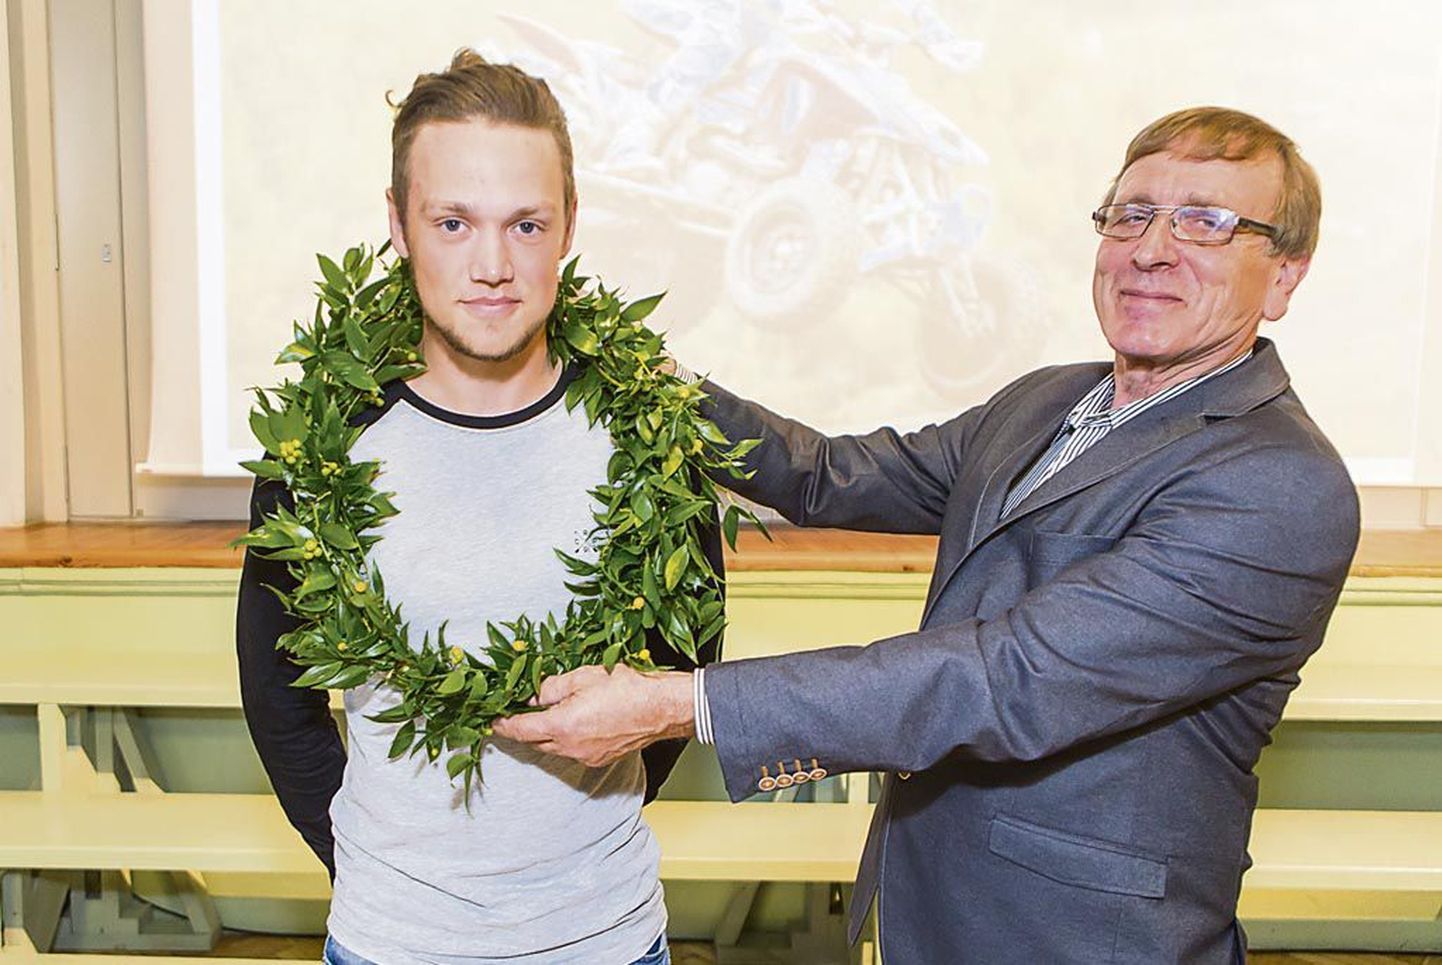 Pärnu ühisgümnaasiumi 11. klassi õpilane Kevin Saar (vasakul) tuli esimese eestlasena quadracer’ite arvestuses Euroopa meistriks. Selle puhul korraldas koolipere eesotsas direktor Mart Kuuskmanniga talle südamliku üllatuse.